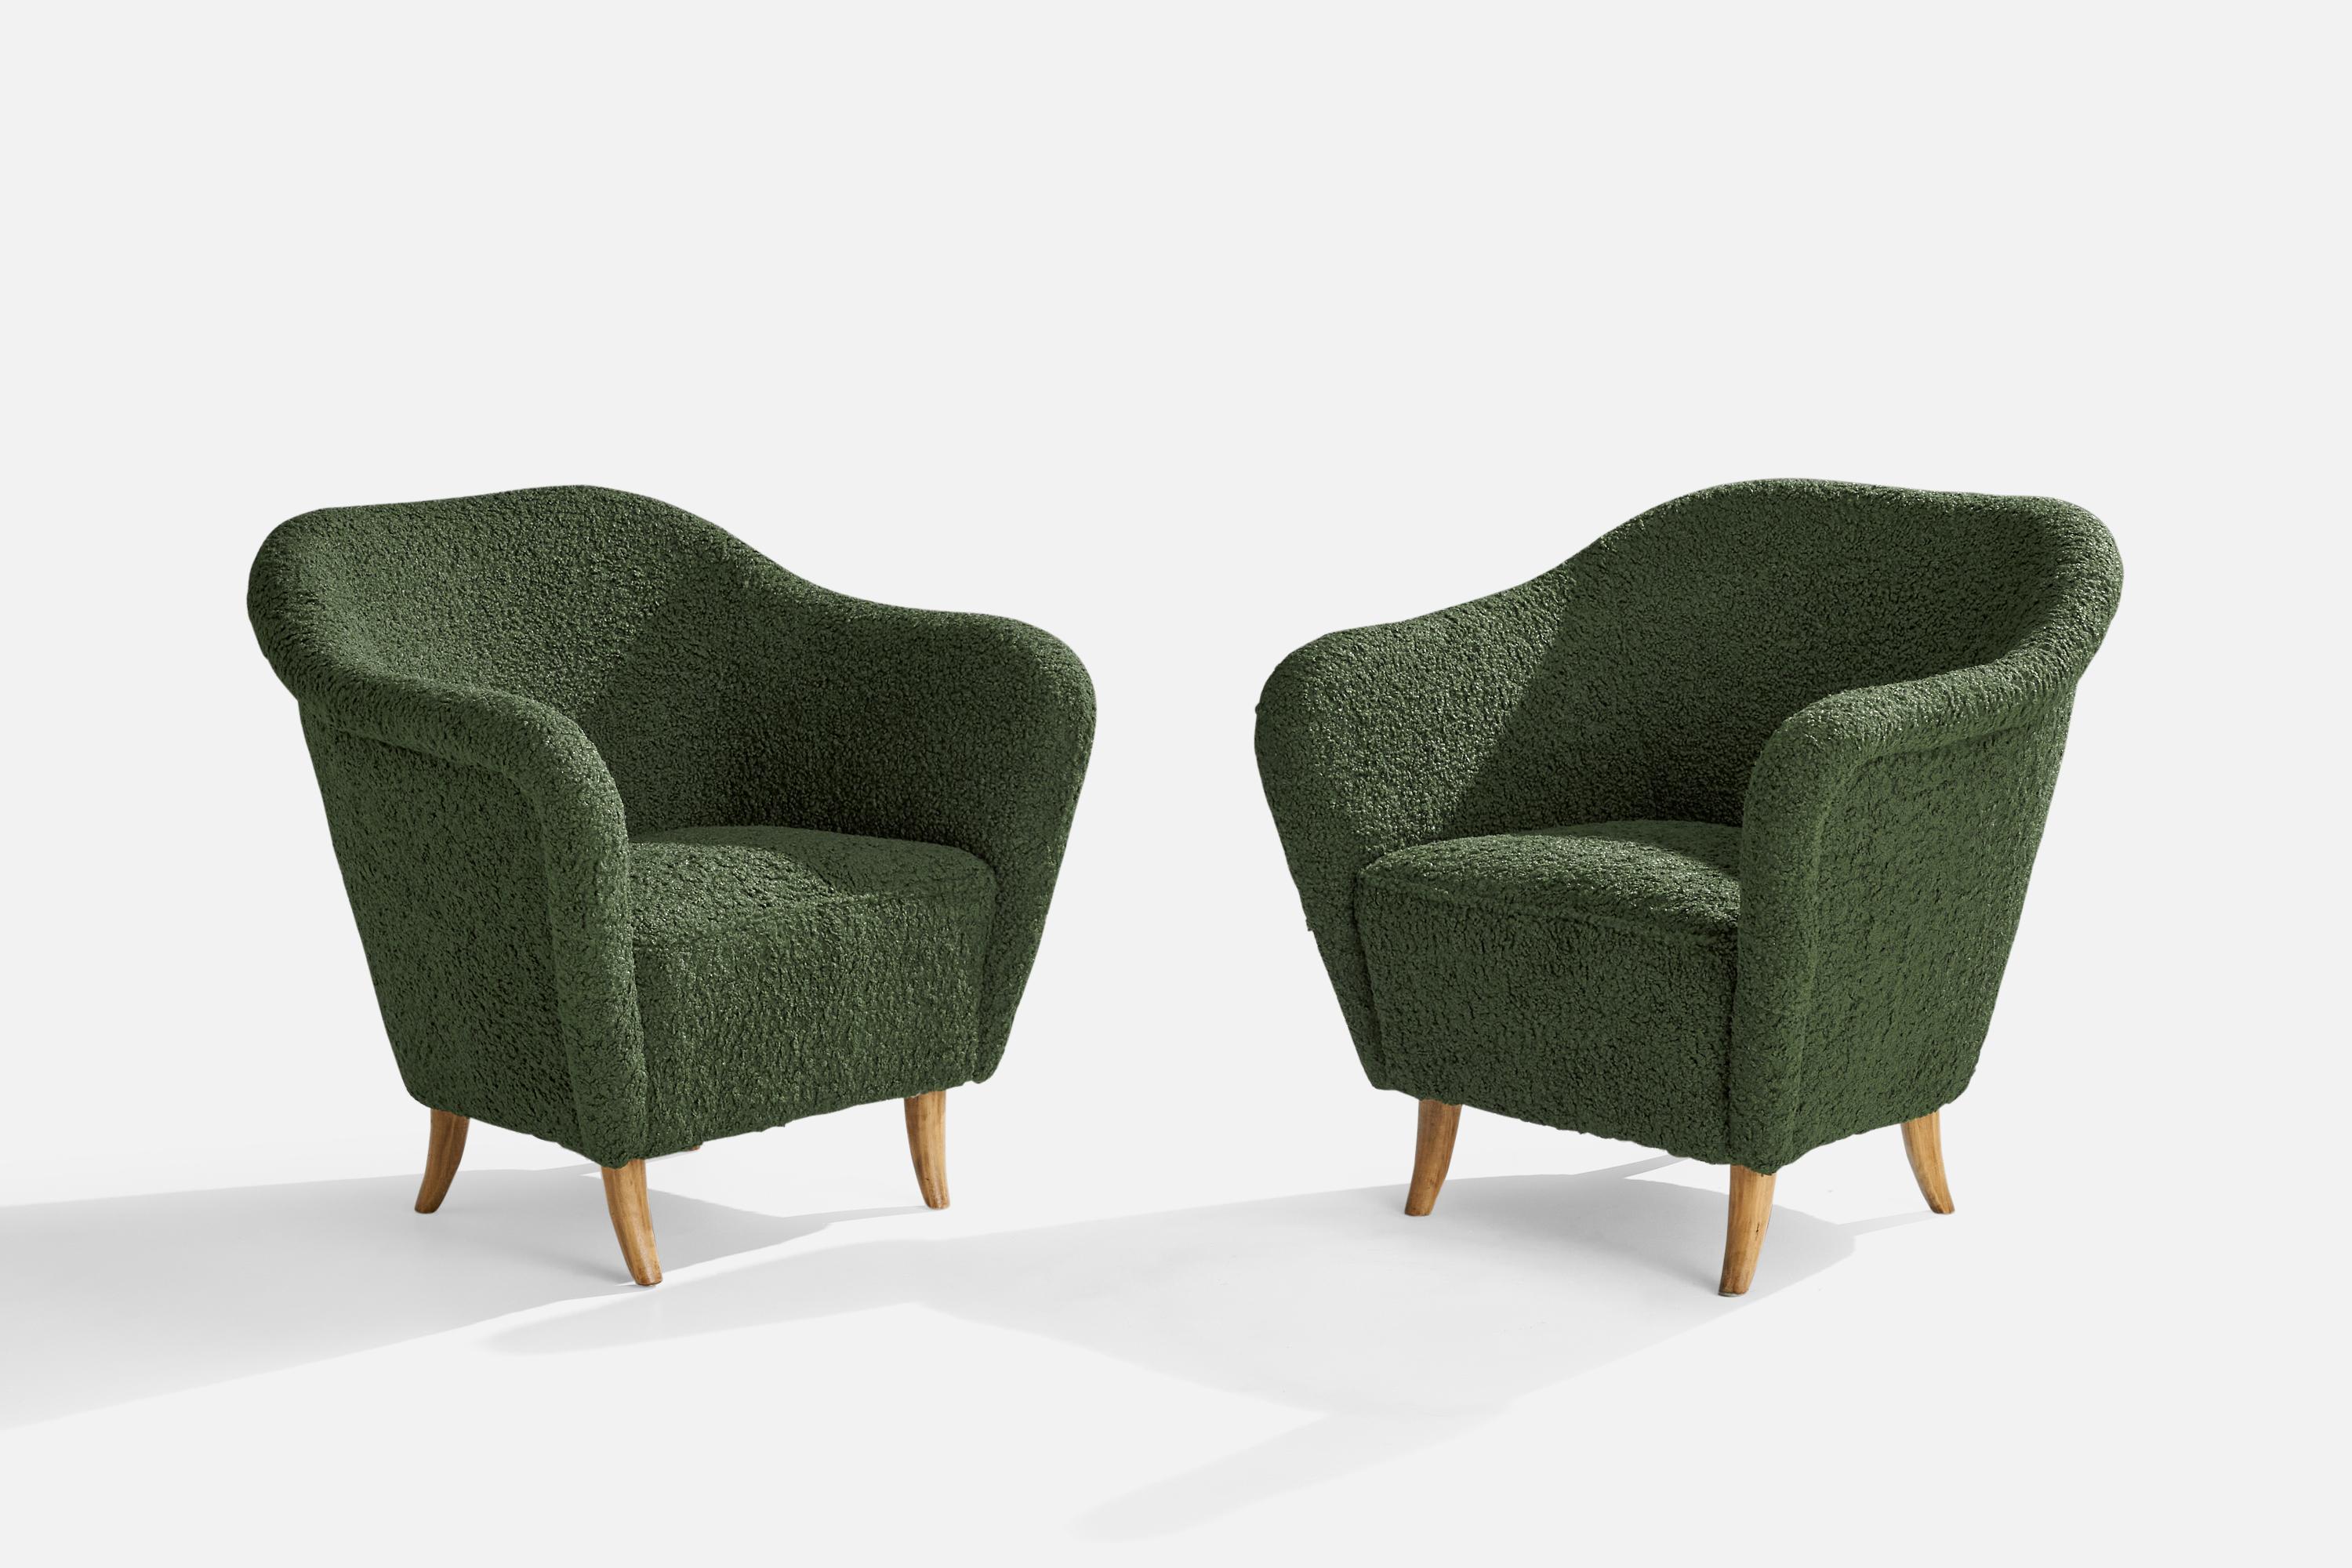 Ein Paar Sessel aus grünem Bouclé-Stoff und Birkenholz, entworfen und hergestellt in Finnland, 1940er Jahre.

Sitzhöhe 16,5